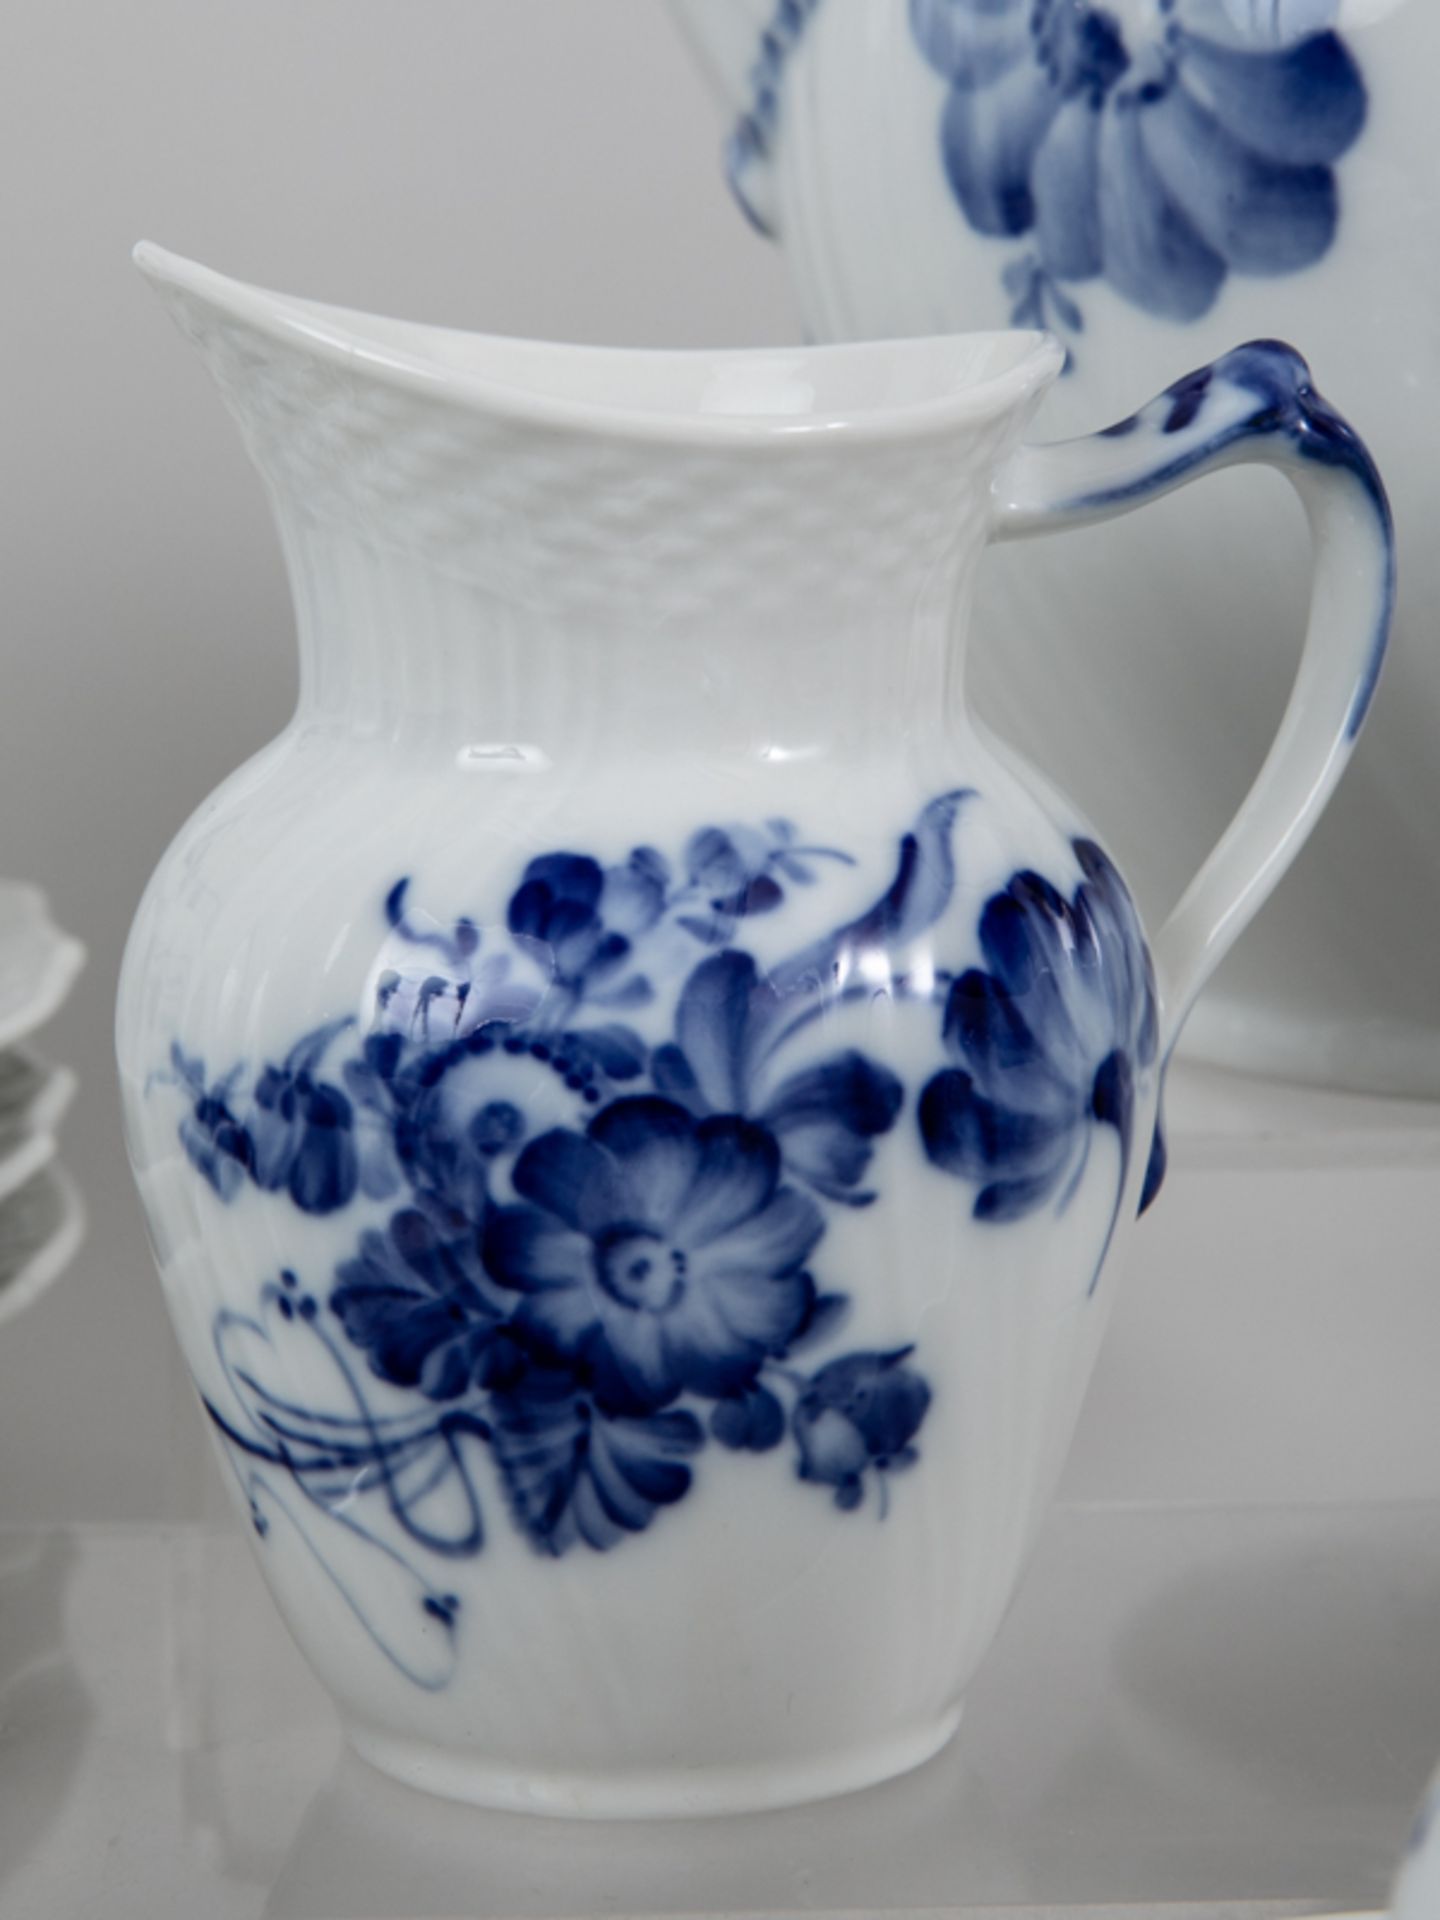 41-tlg. Kaffee-Service, "Blaue Blume", Royal Copenhagen, 20. Jh. Weißporzellan mit unter Glasu - Bild 2 aus 3